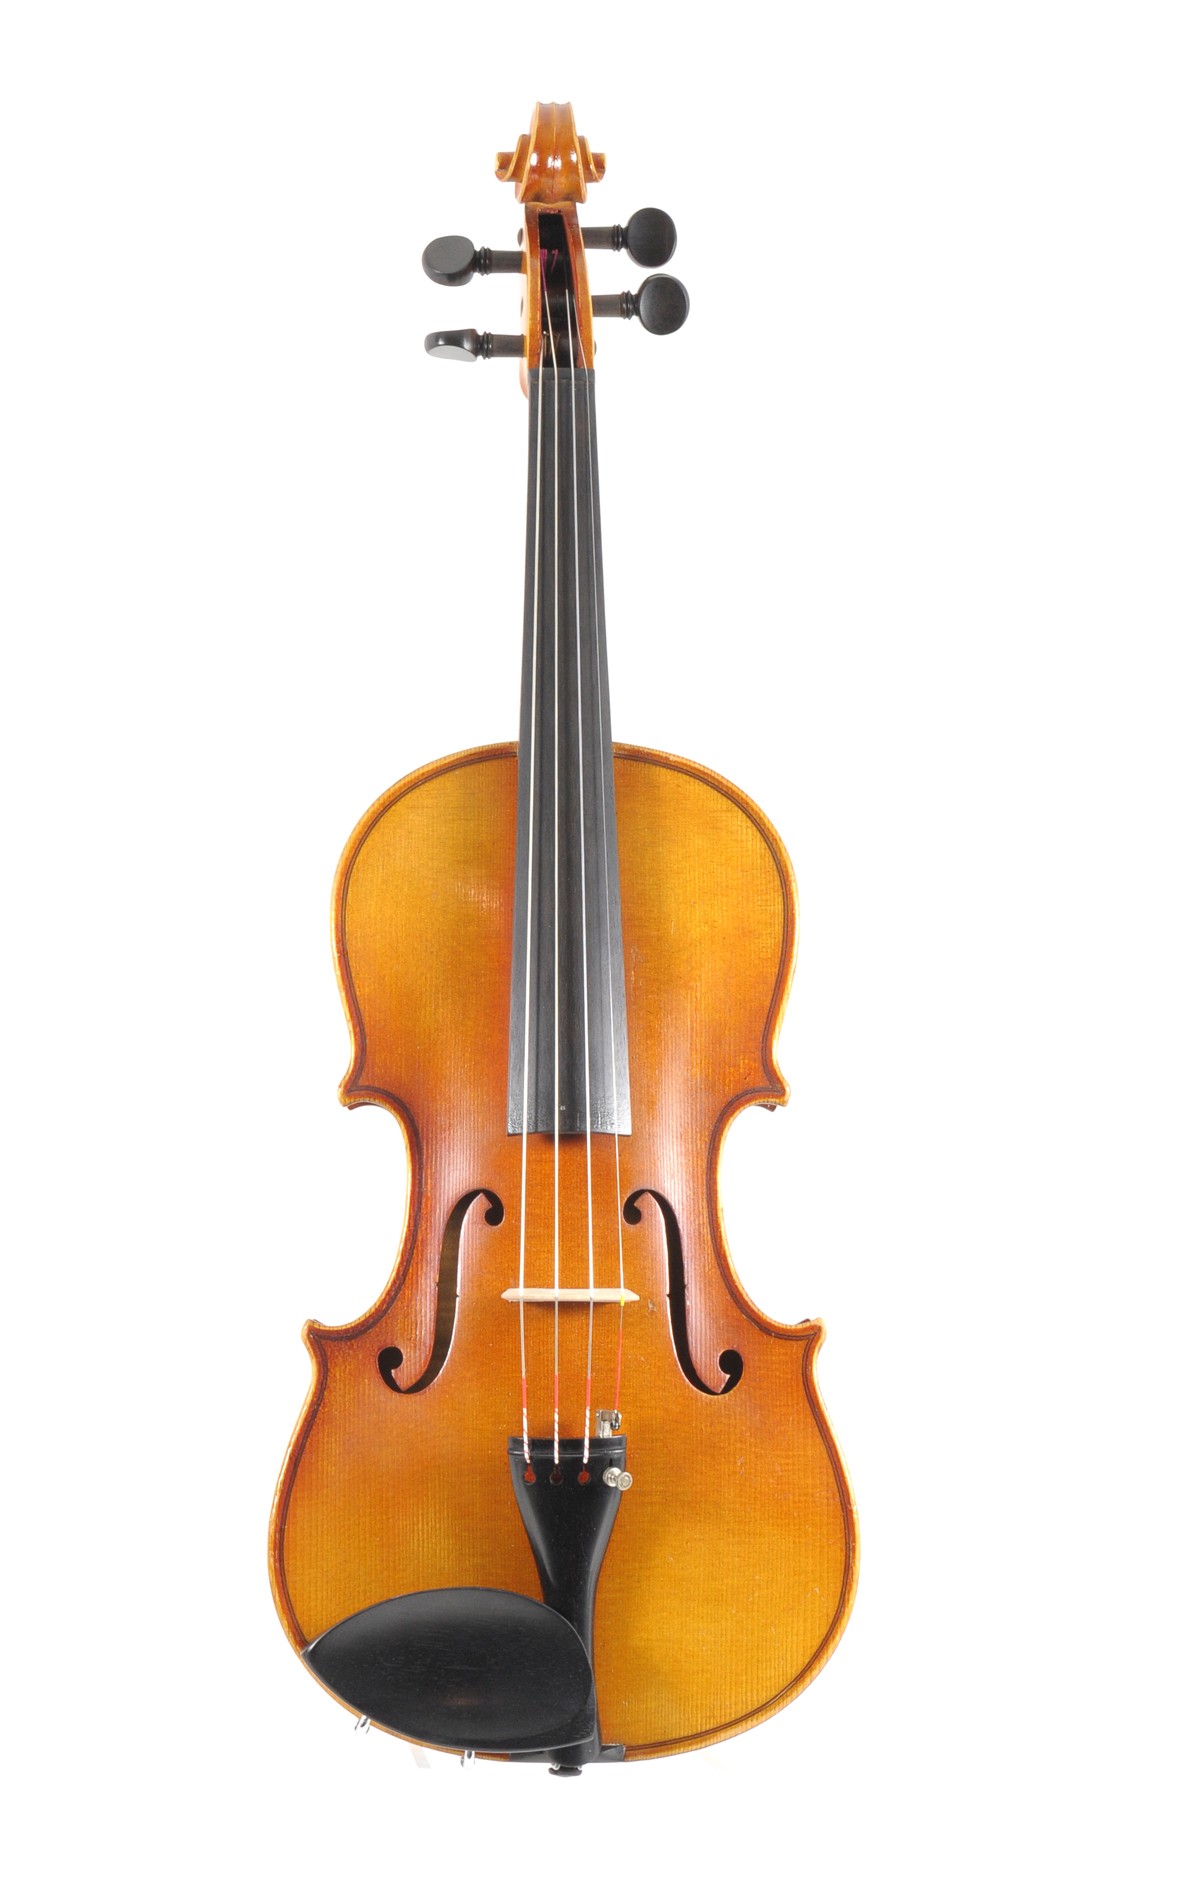 German violin, Bubenreuth 20th century - top view